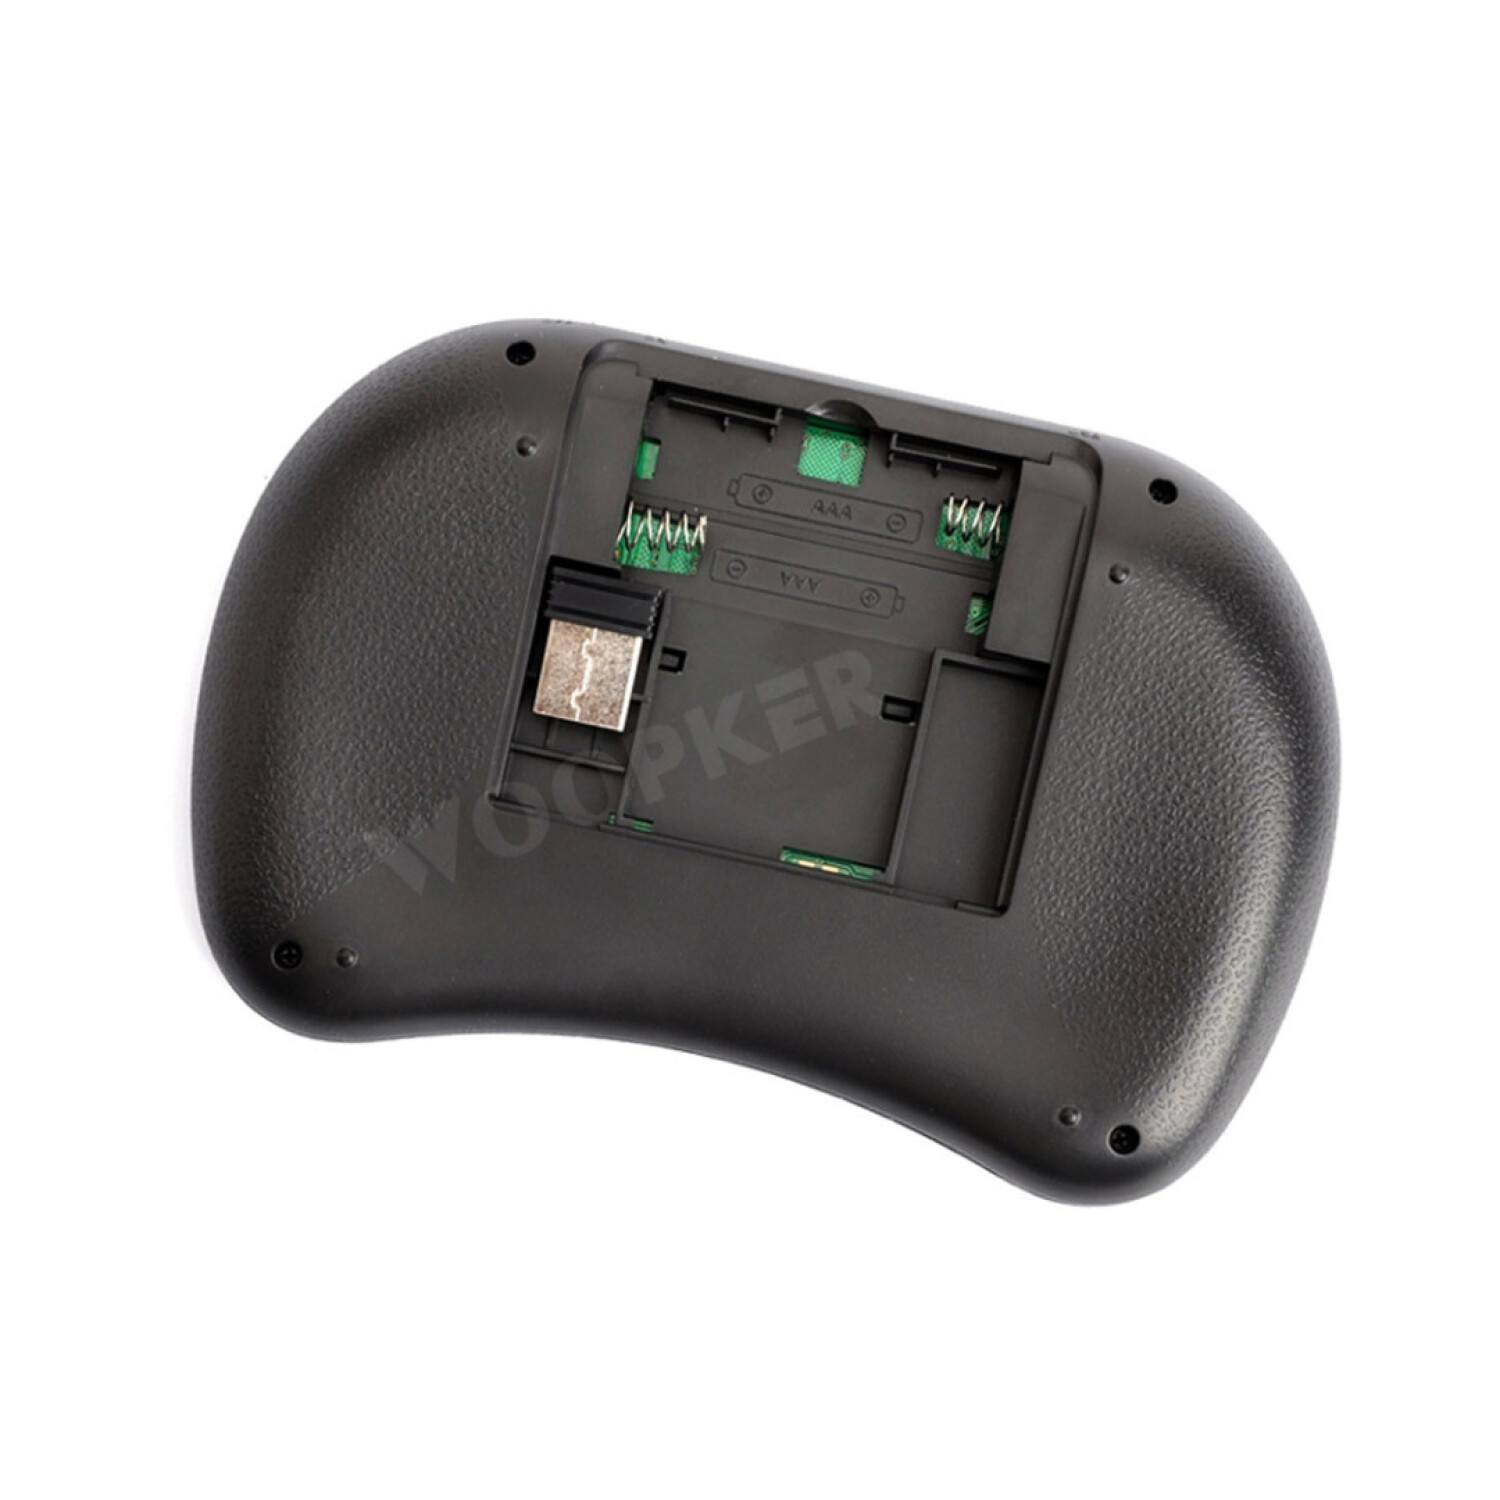 Mini Teclado Inalambrico Retroiluminado Touch Pad Smart Tv